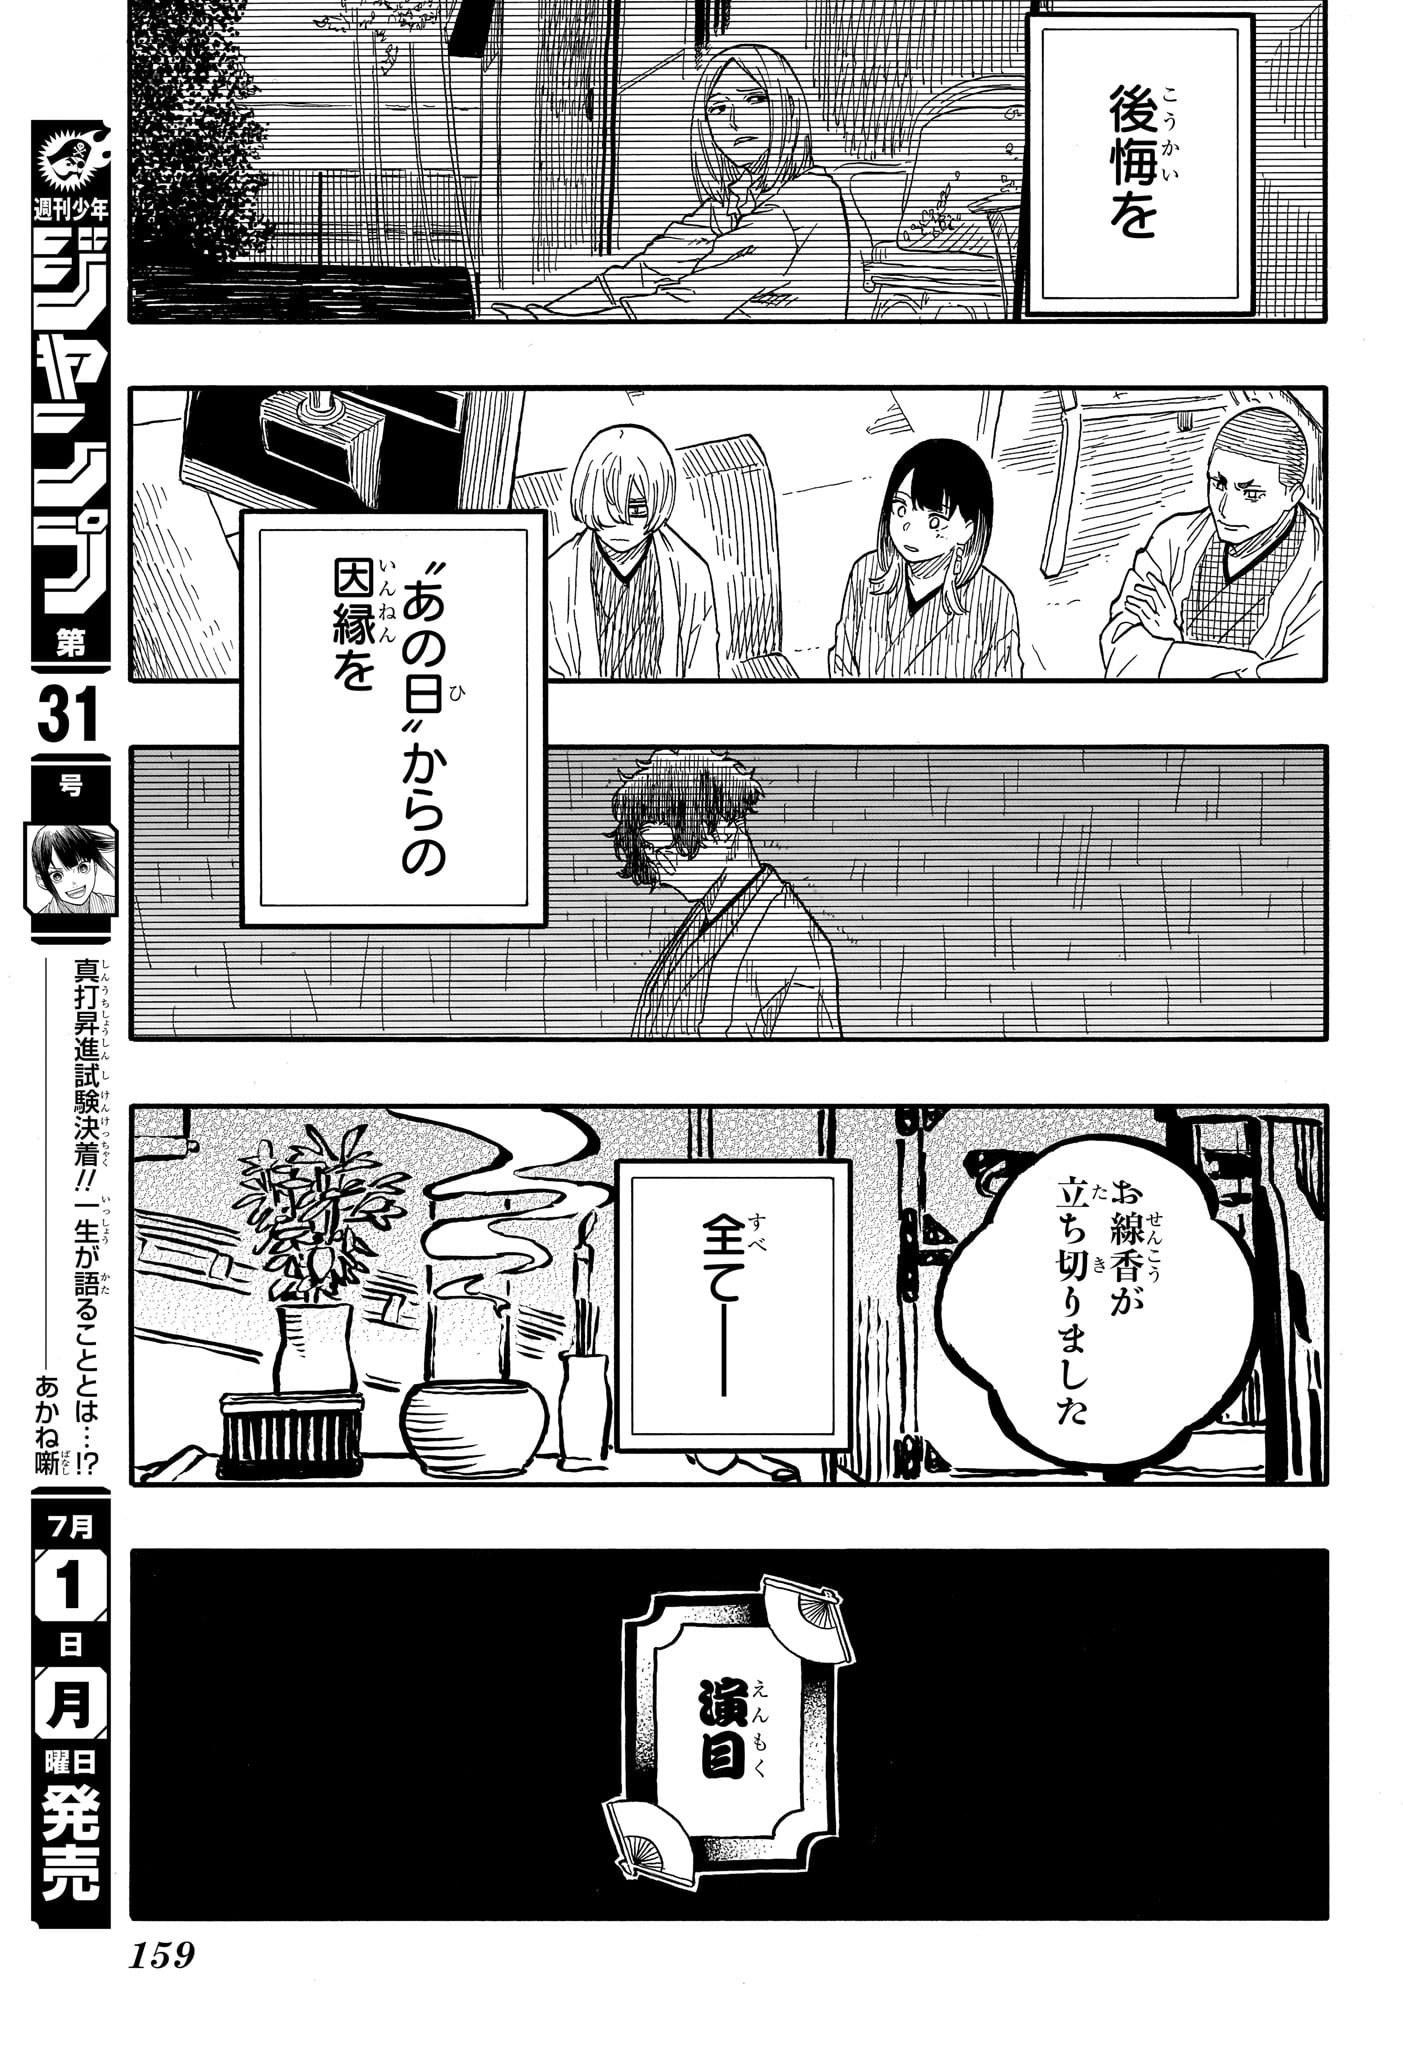 Akane-Banashi - Chapter 115 - Page 15